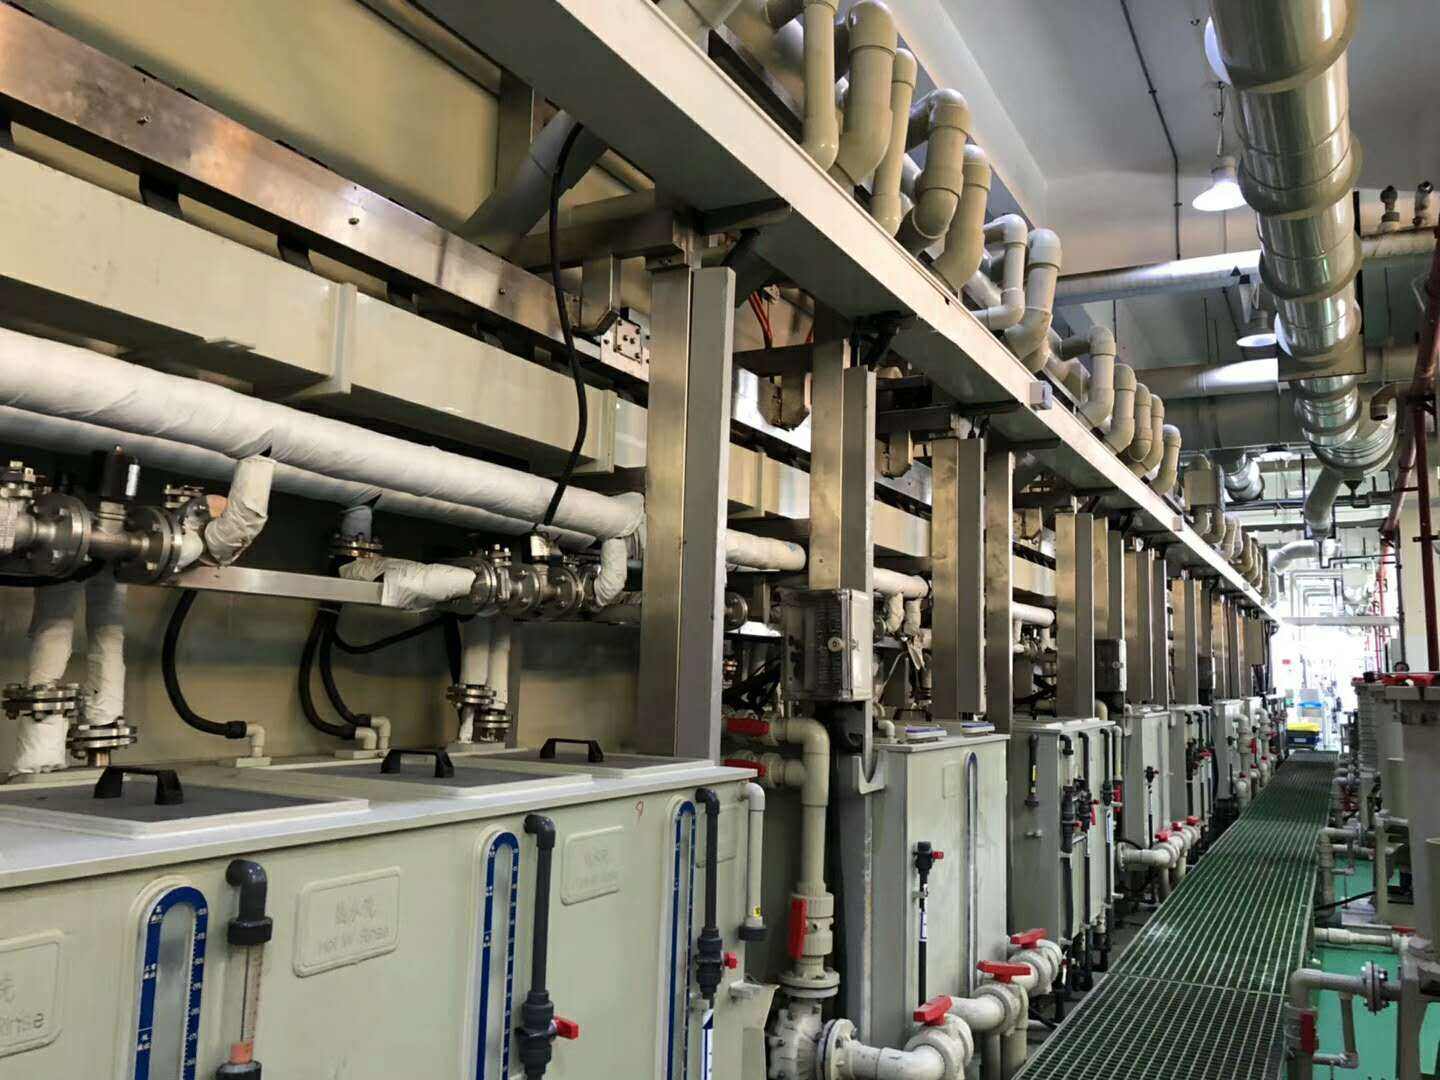 梅州梅江区化工设备回收-电镀生产线回收-整厂设备回收